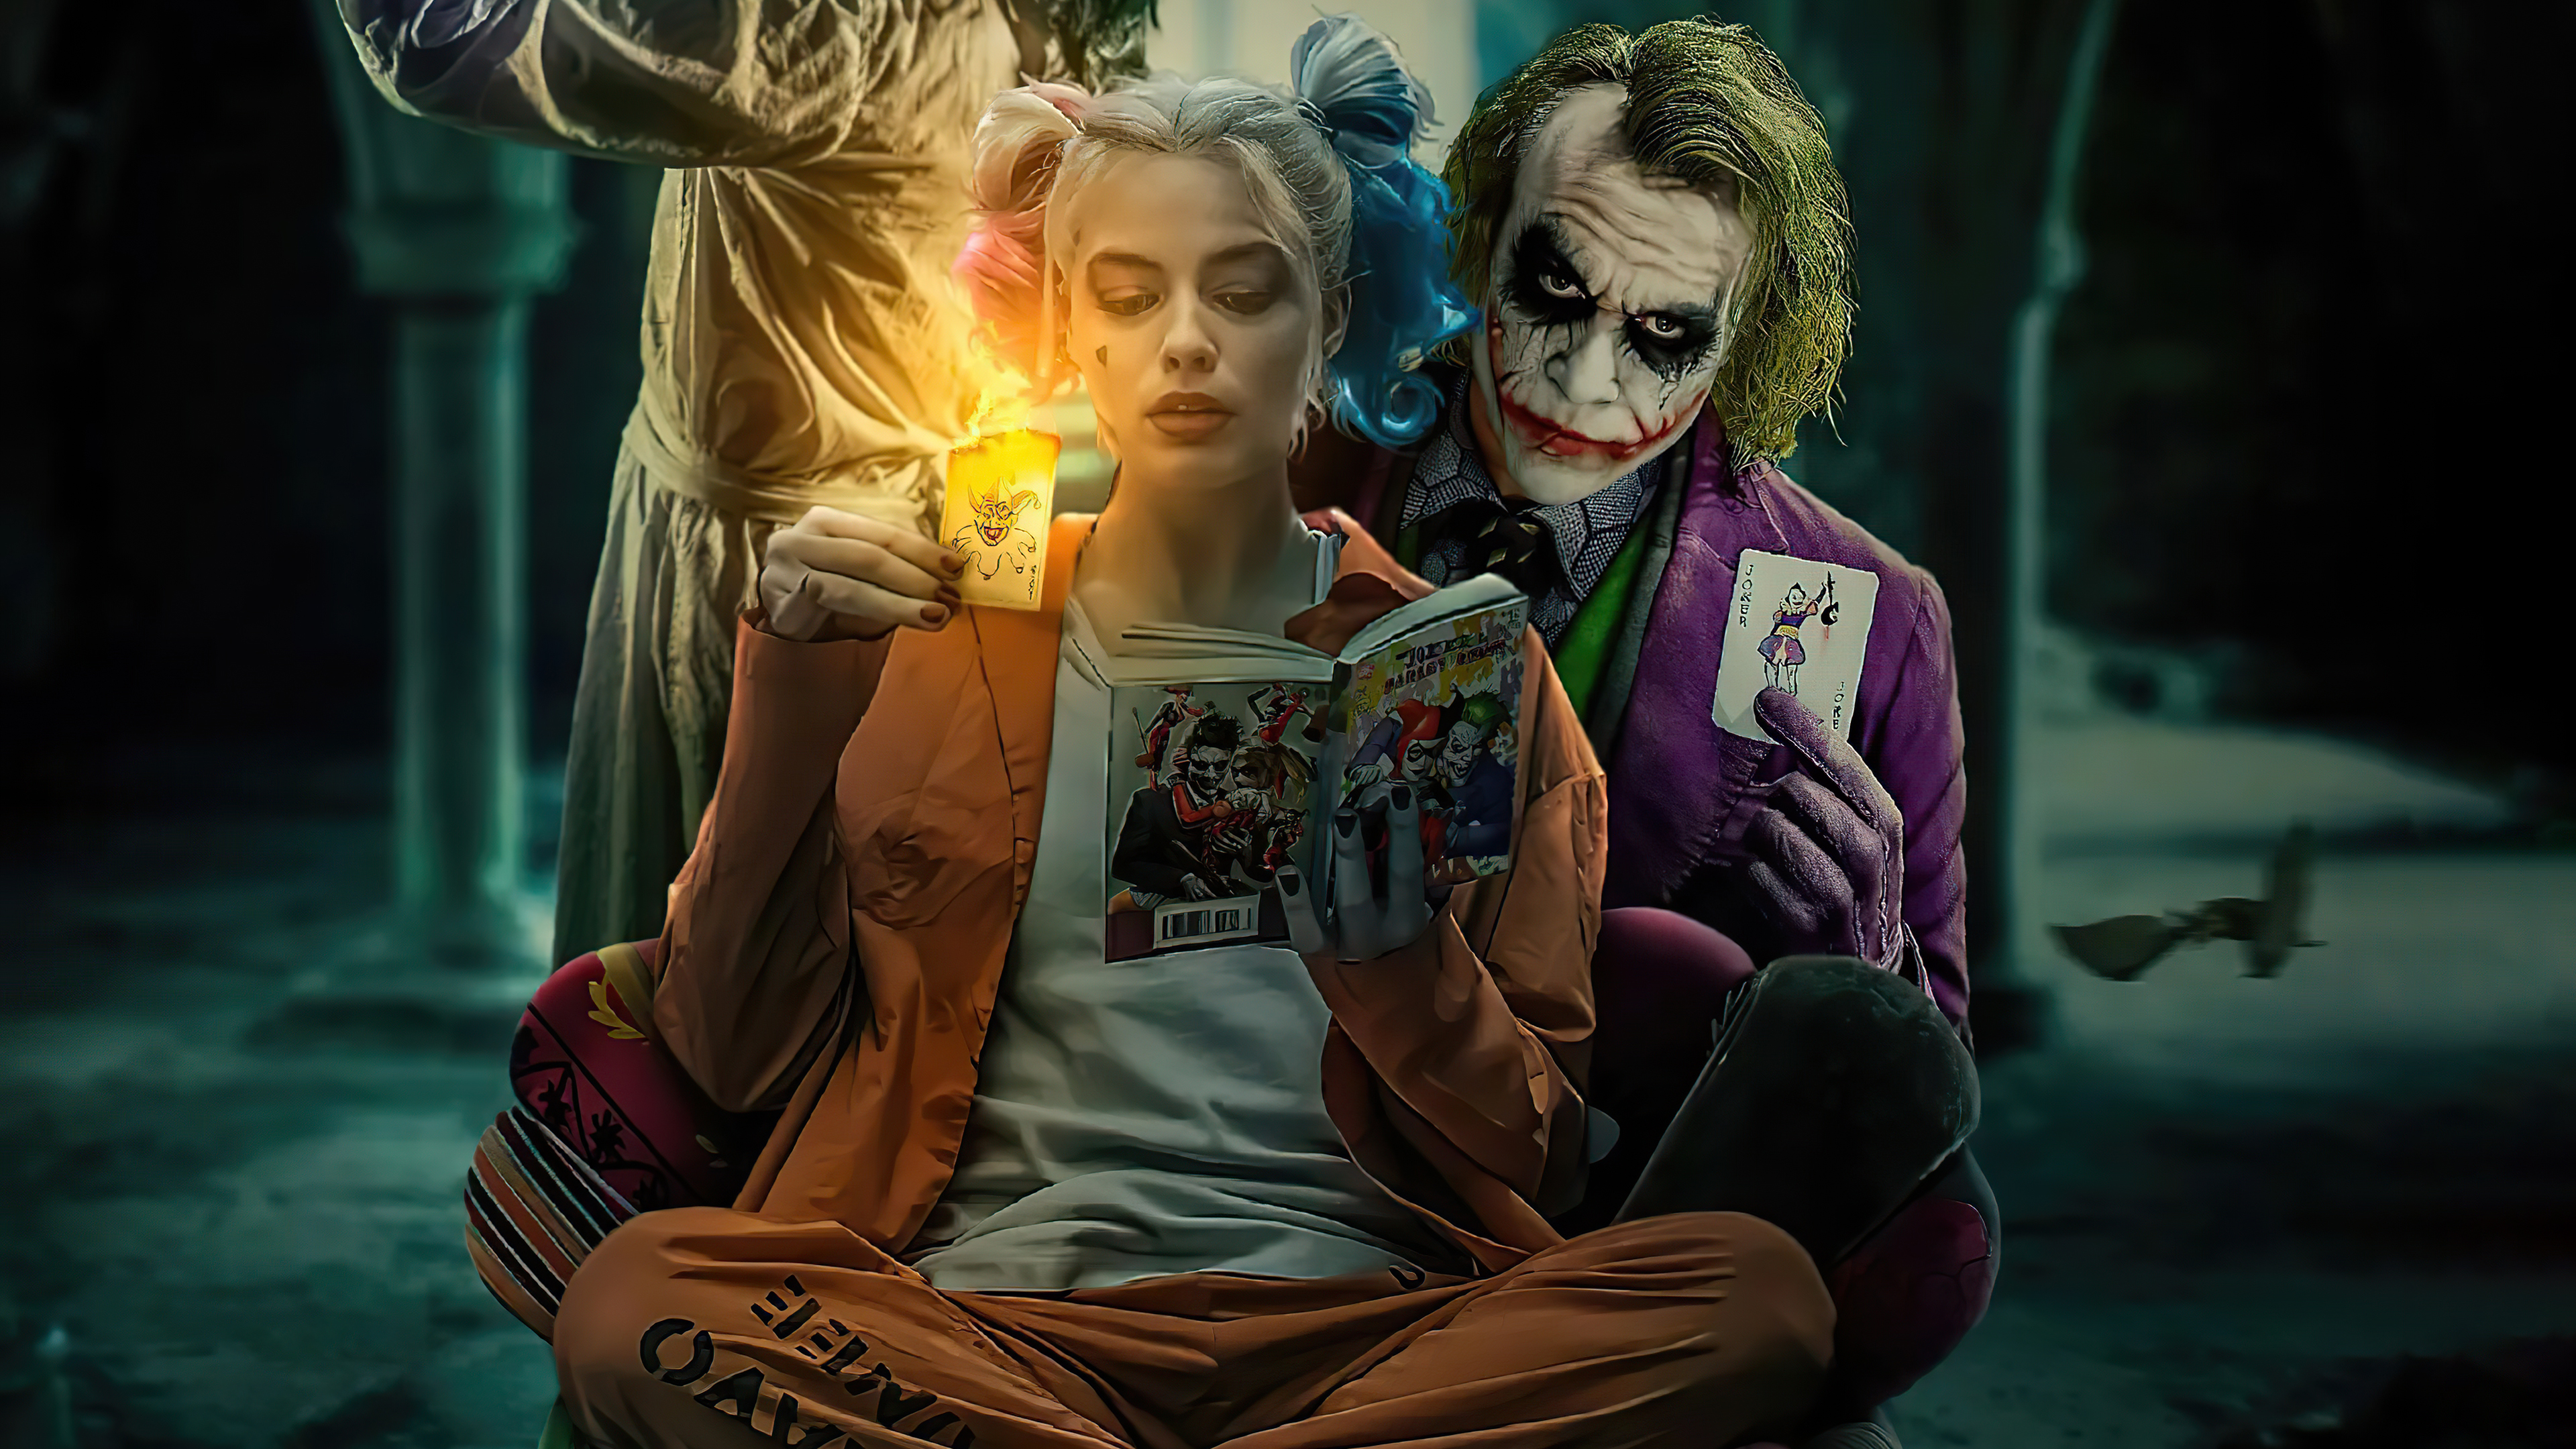 Joker Girl: Pha trộn giữa sự nguy hiểm và nét quyến rũ của một cô gái, Joker Girl chắc chắn sẽ khiến bạn không thể rời mắt khỏi những hình ảnh của cô ấy. Đắm mình trong thế giới bí ẩn của Joker Girl và khám phá những chi tiết đầy bất ngờ trong những bức tranh liên quan đến cô.